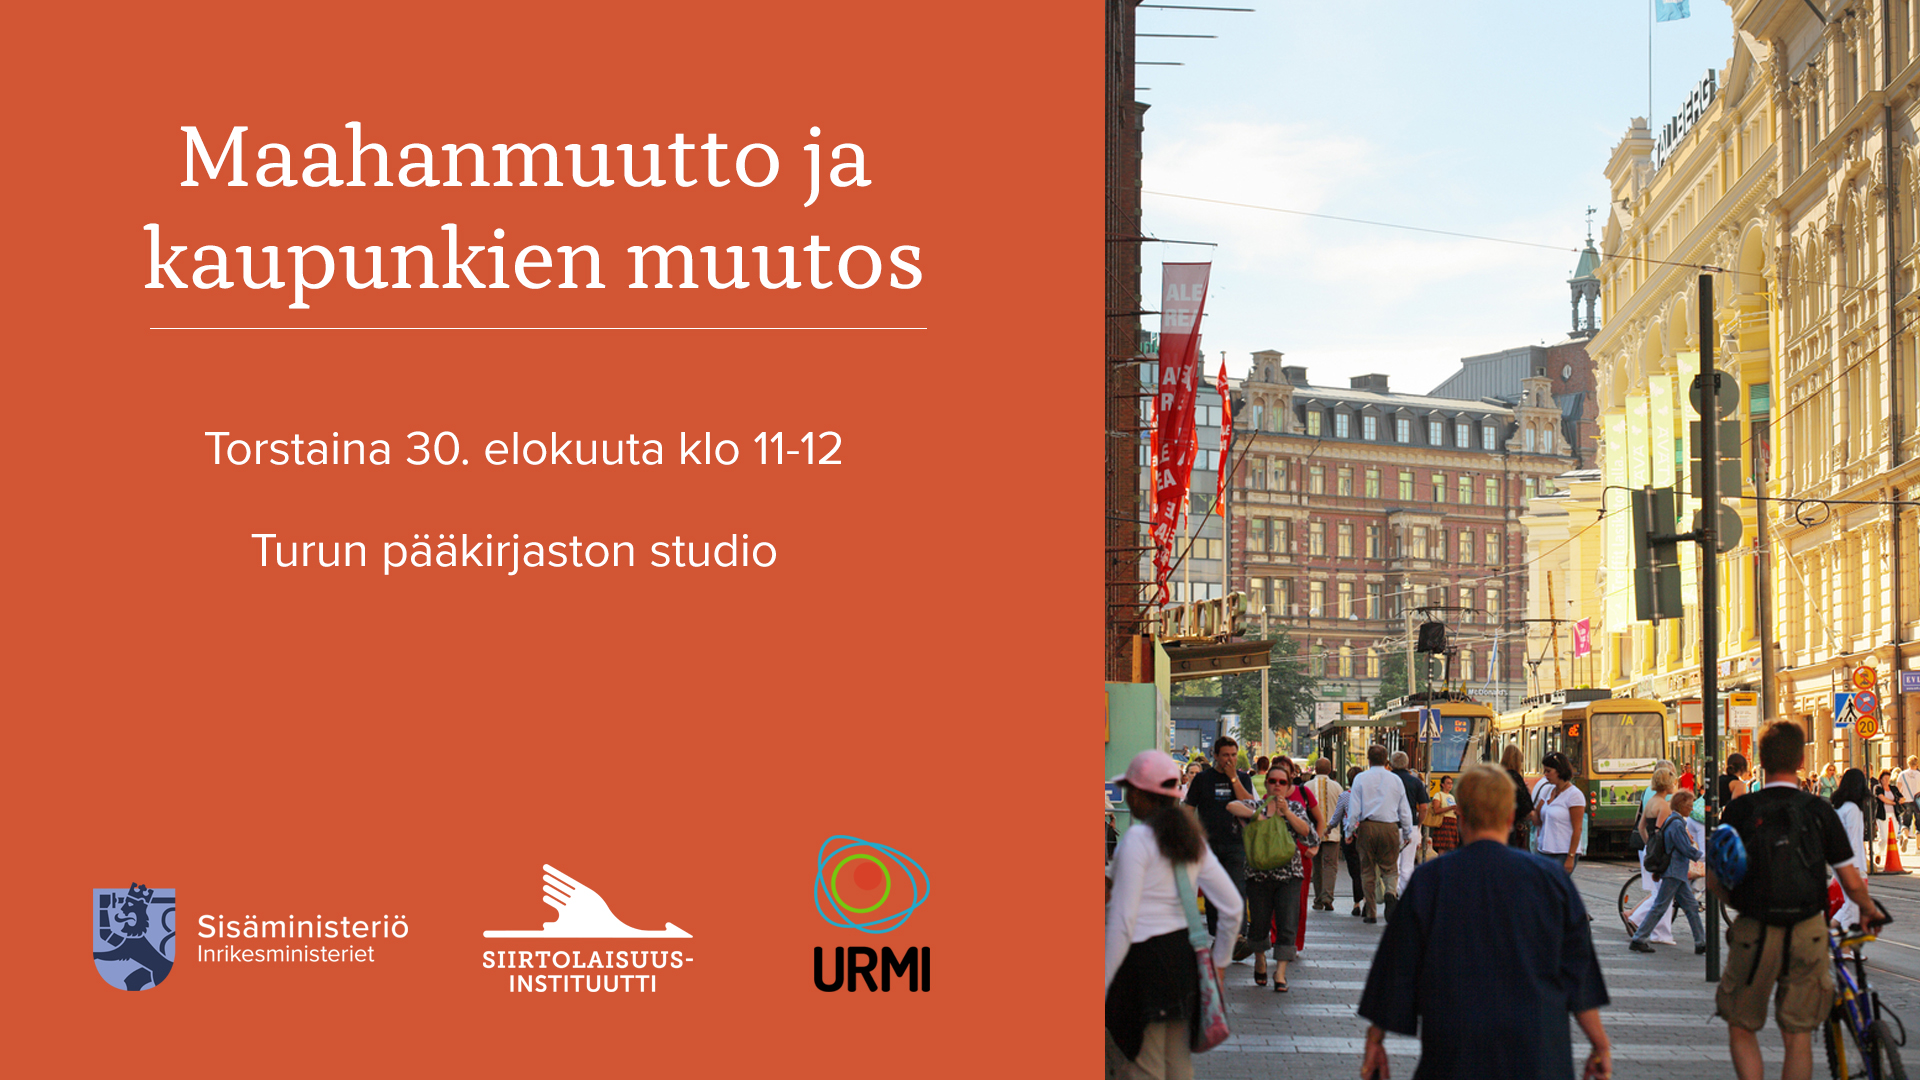 Maahanmuutto ja kaupunkein muutos -paneelikeskustelu 30.8.2018 Turun pääkirjasto klo 11